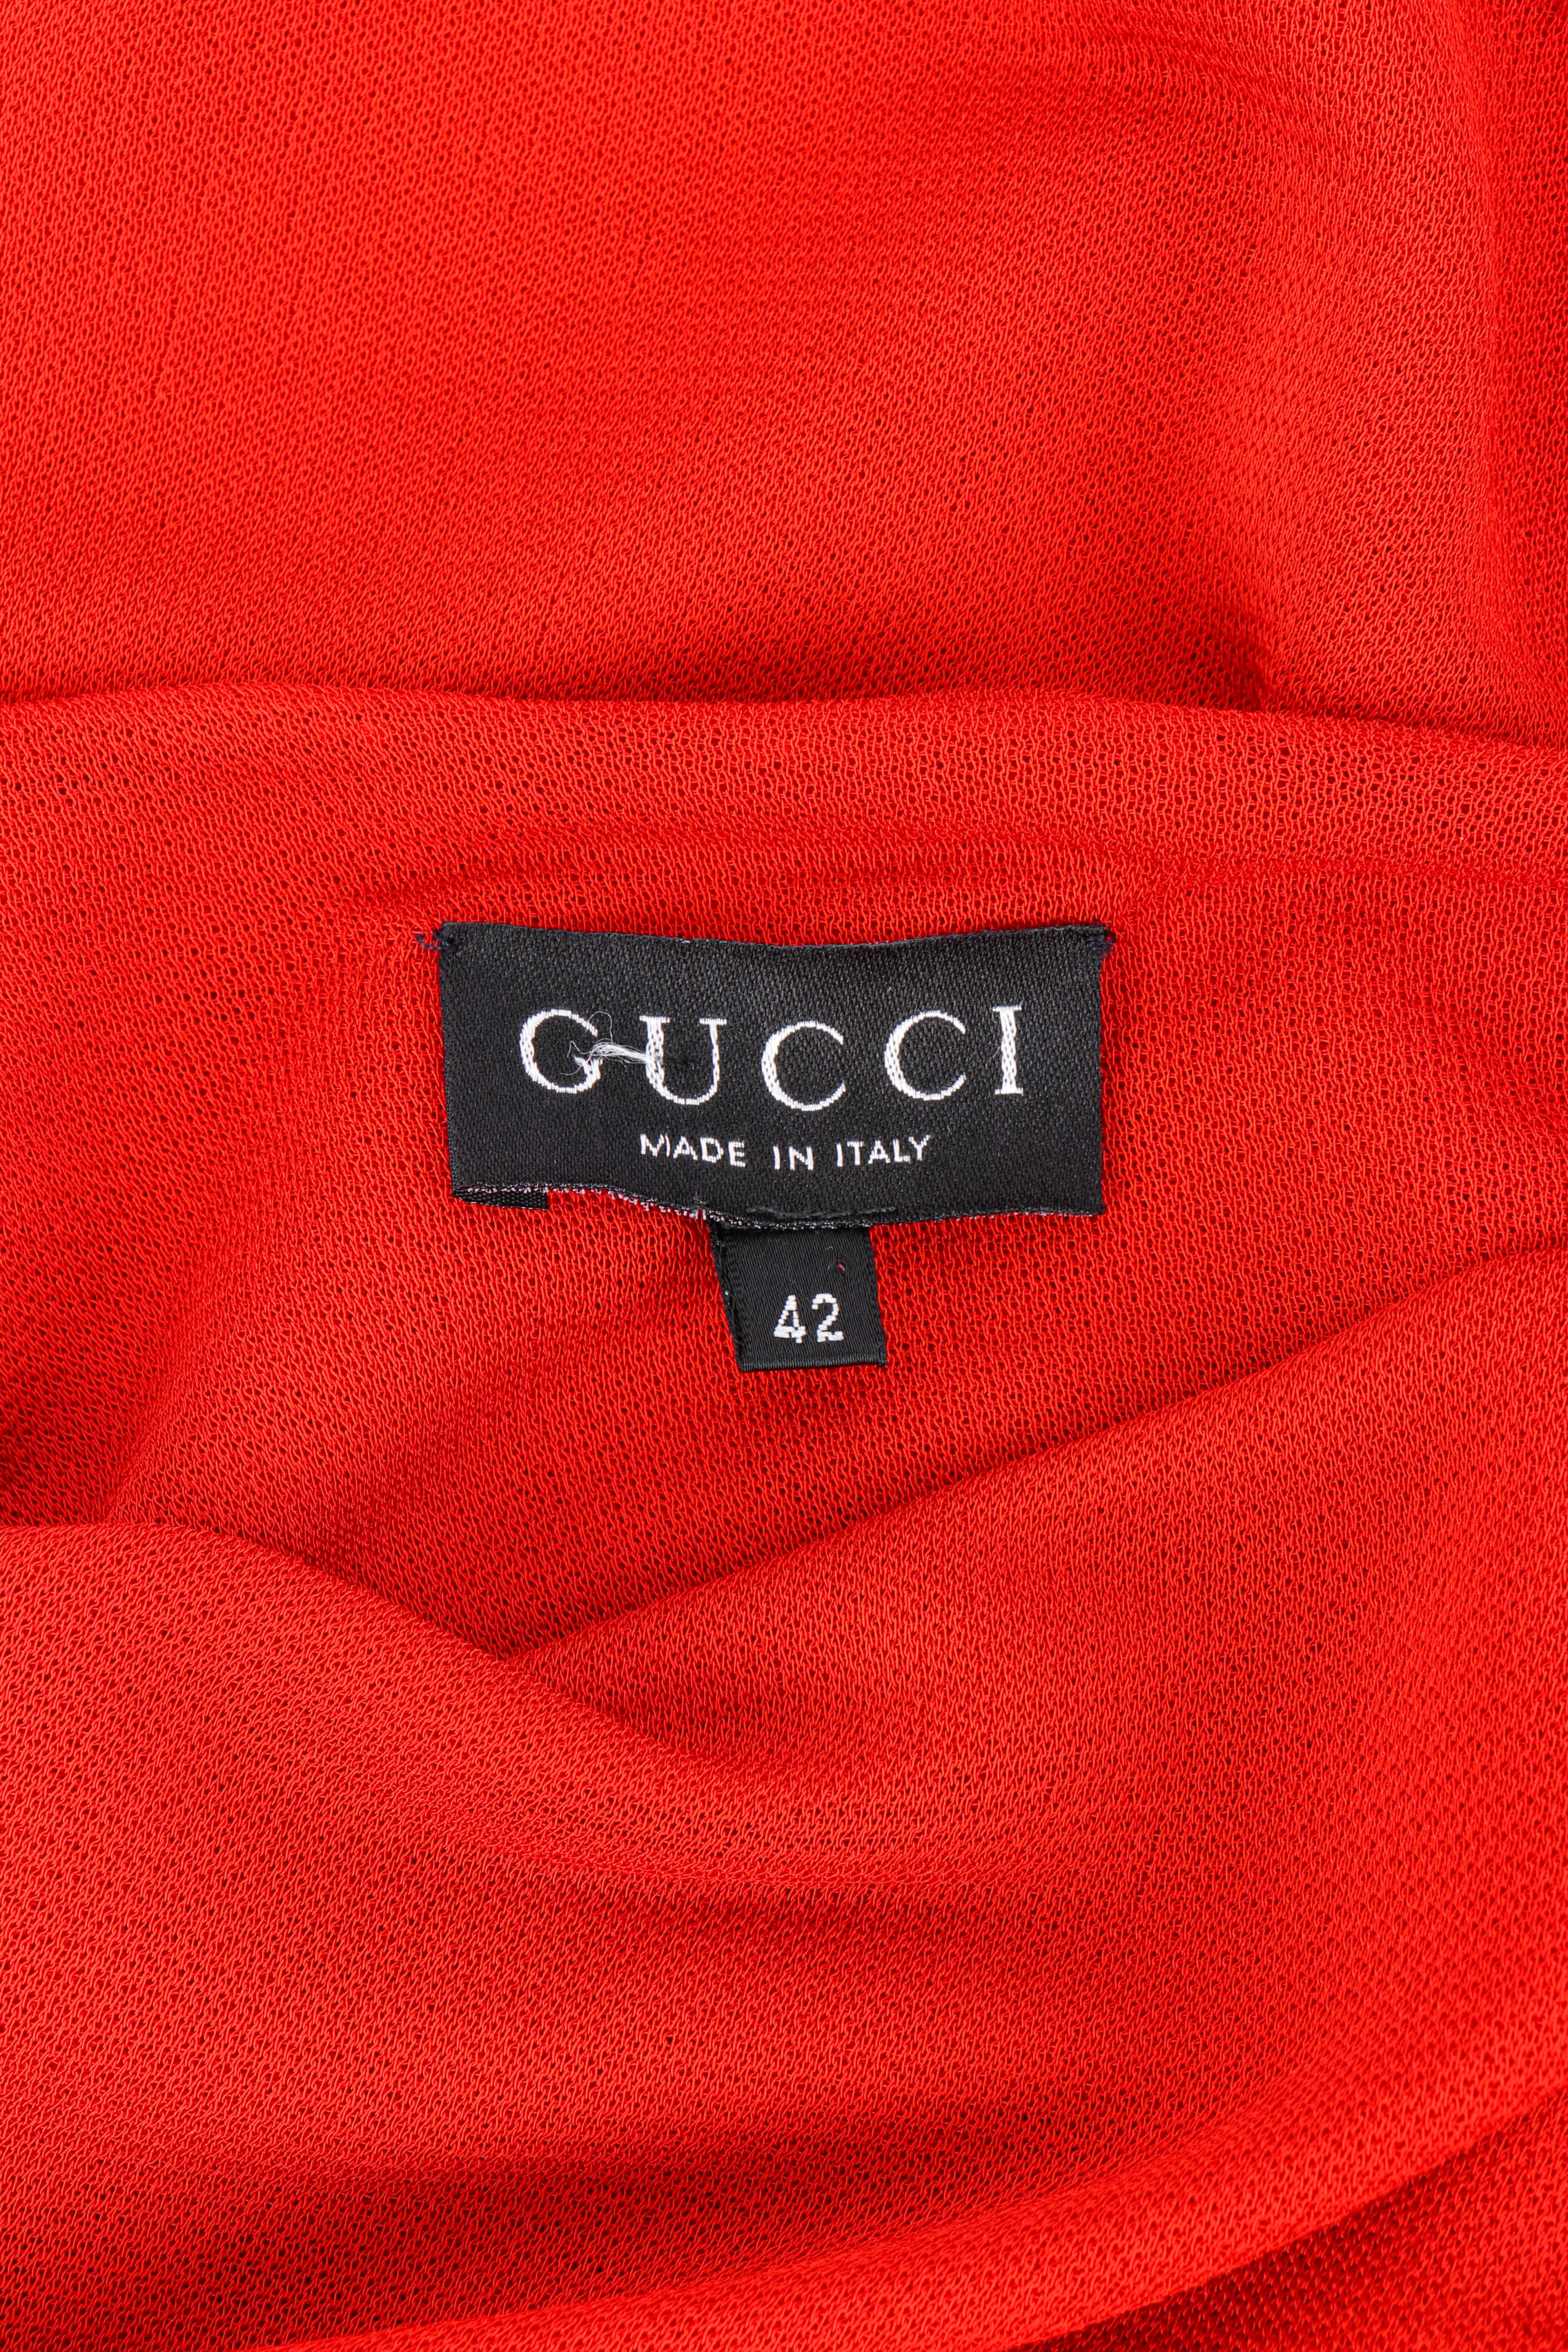 Vintage Gucci 1997 S/S Open Back Gown signature label closeup @recessla